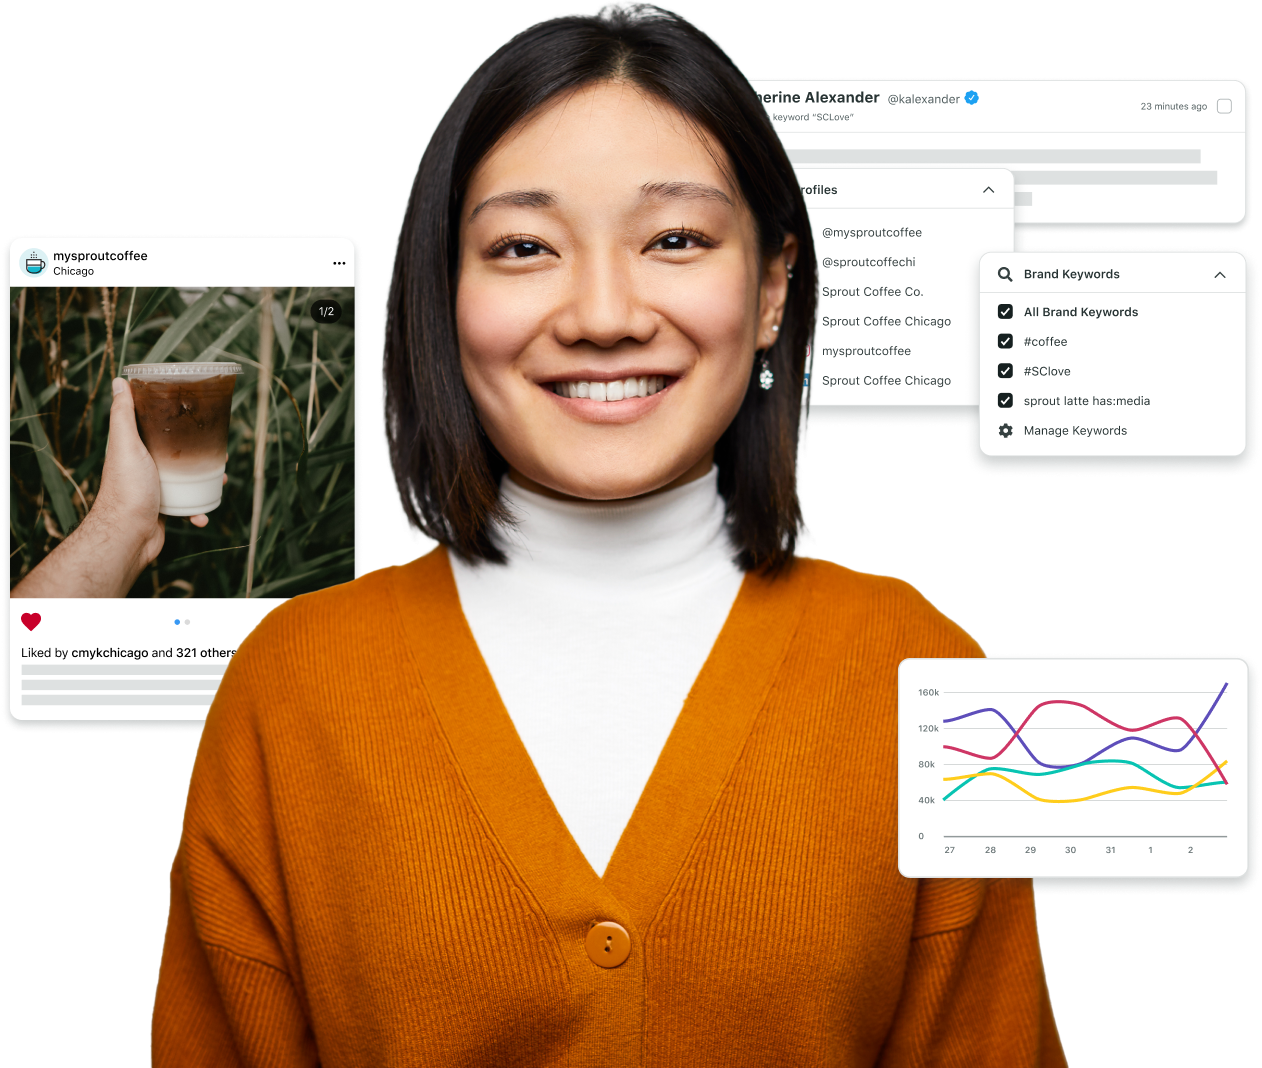 Un'utente di Sprout sorridente circondata da immagini della piattaforma Sprout che evidenziano l'intera gamma di funzionalità per la gestione dei social.